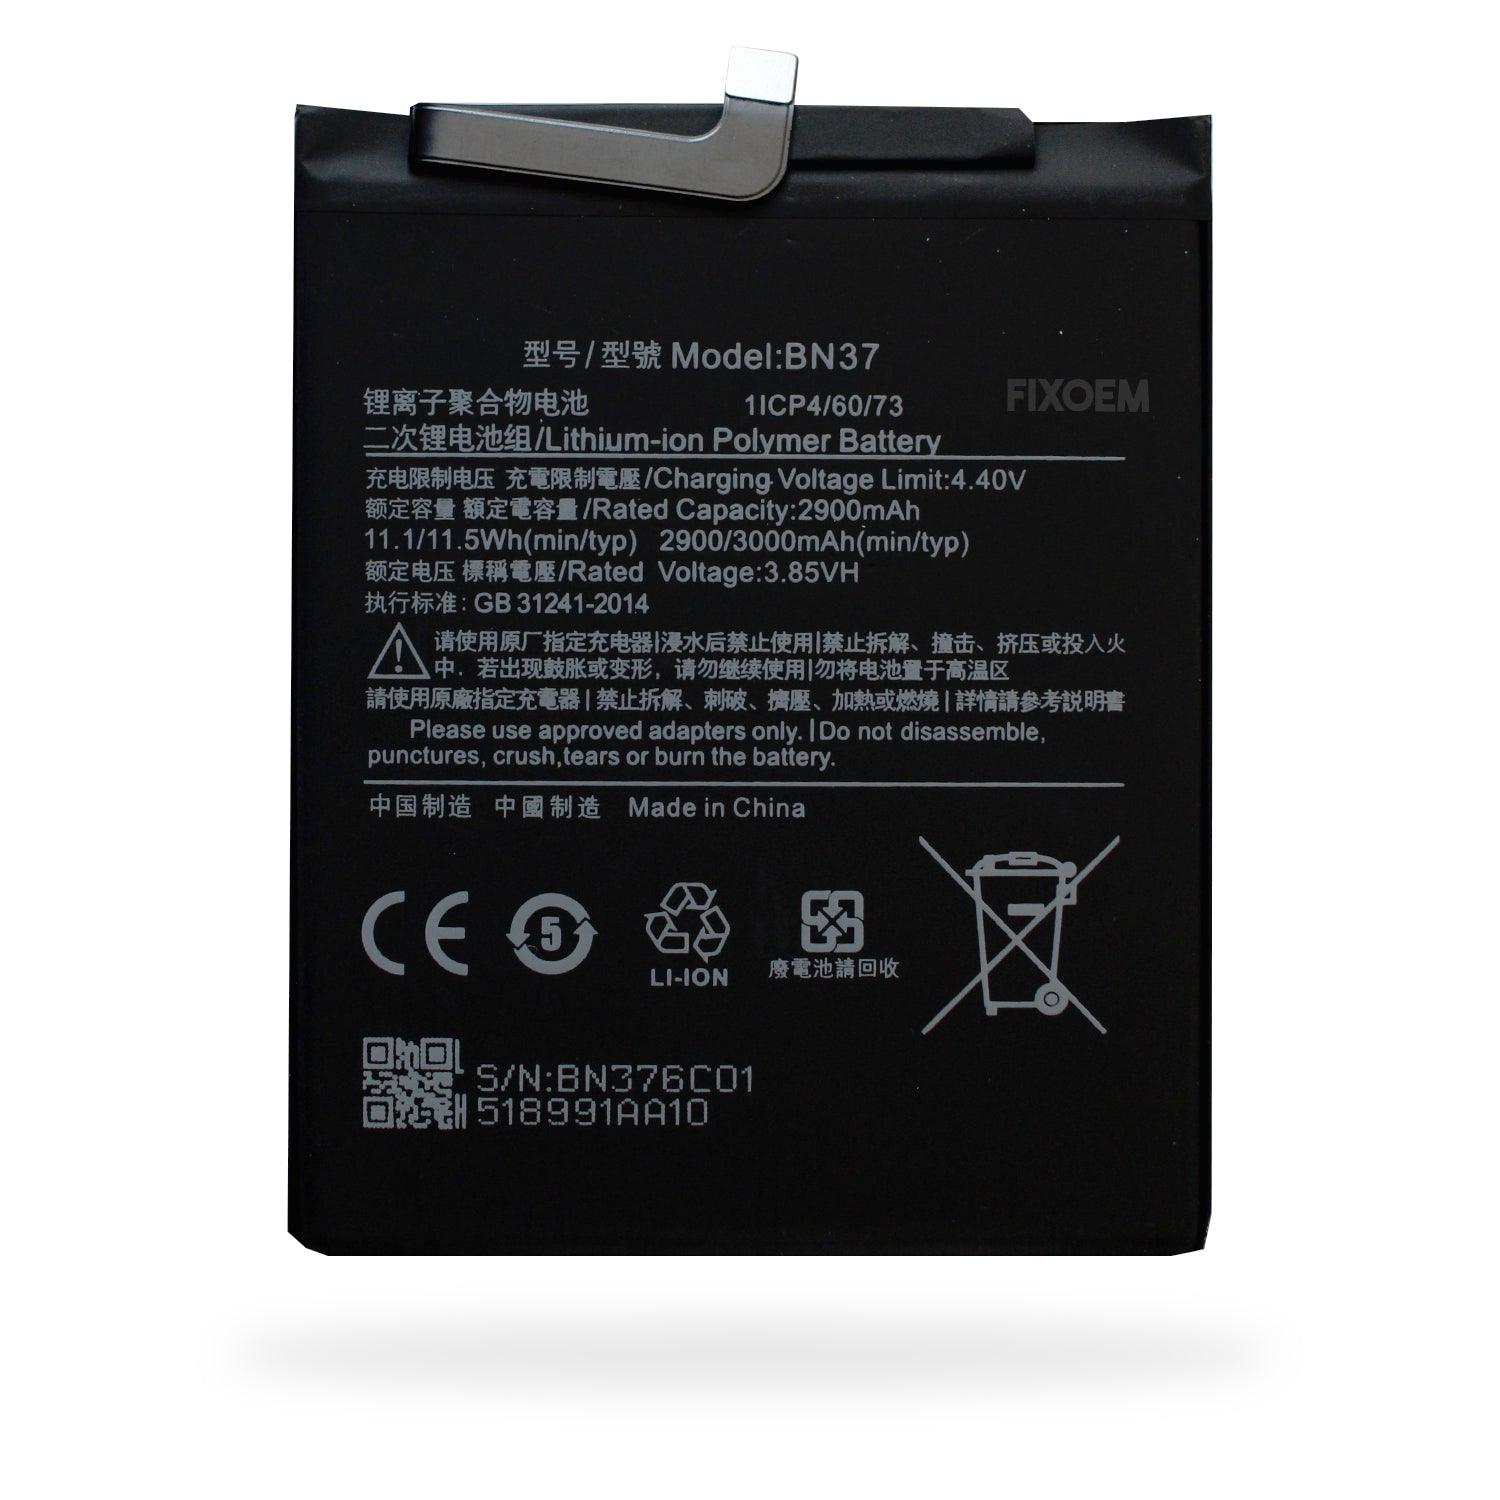 Bateria Xiaomi Redmi 6 M1804C3DG M1804C3DH Bn37 a solo $ 130.00 Refaccion y puestos celulares, refurbish y microelectronica.- FixOEM